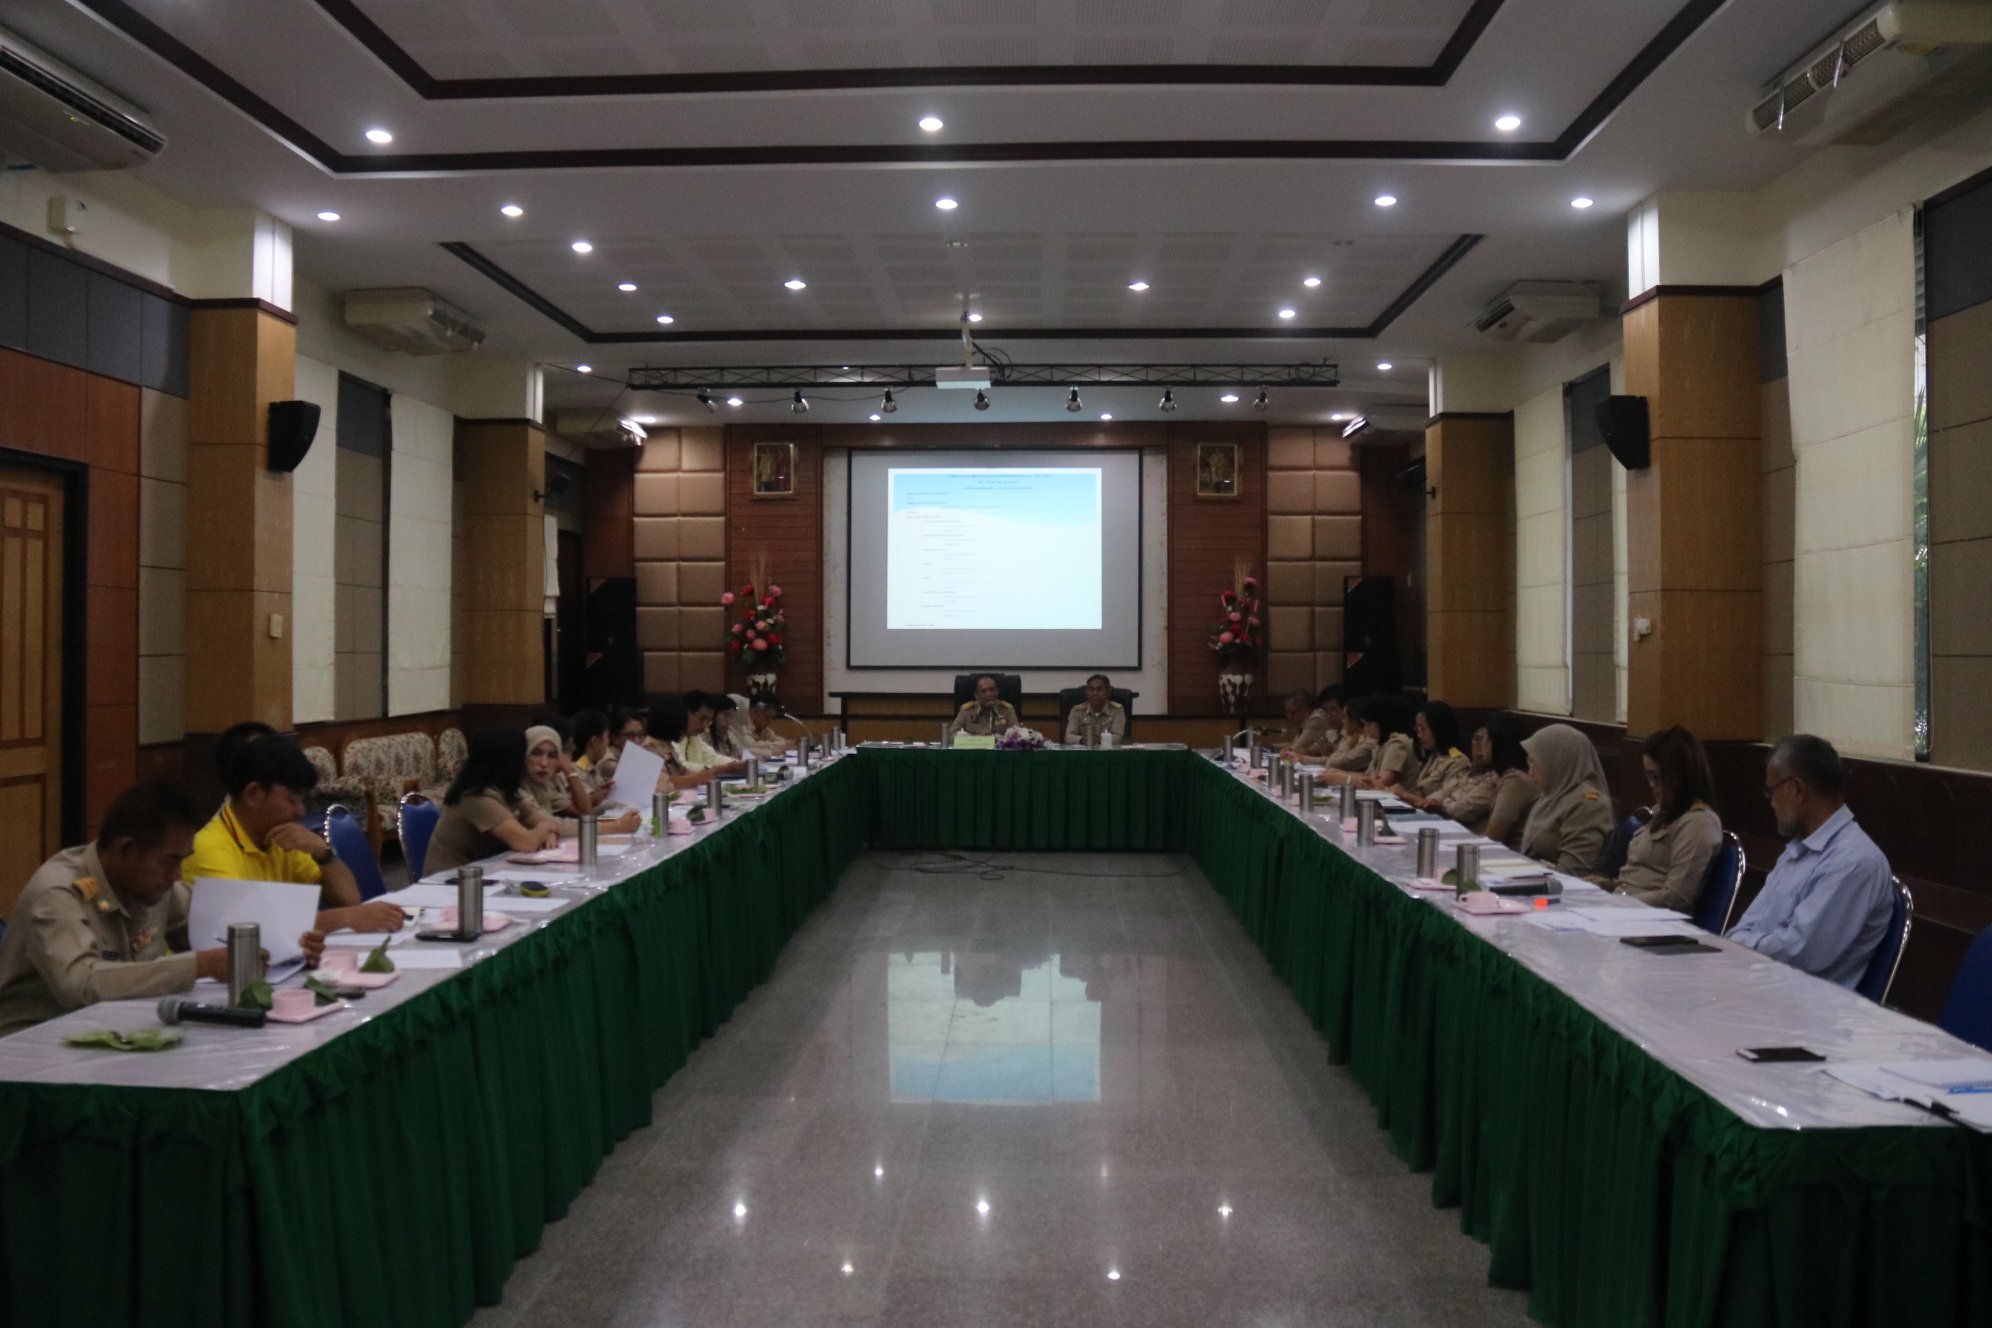  การประชุมหัวหน้าสวนส่วนราชการ หัวหน้าฝ่ายในสังกัด องค์การบริหารส่วนจังหวัดยะลา ครั้งที่ 3/ 2563 